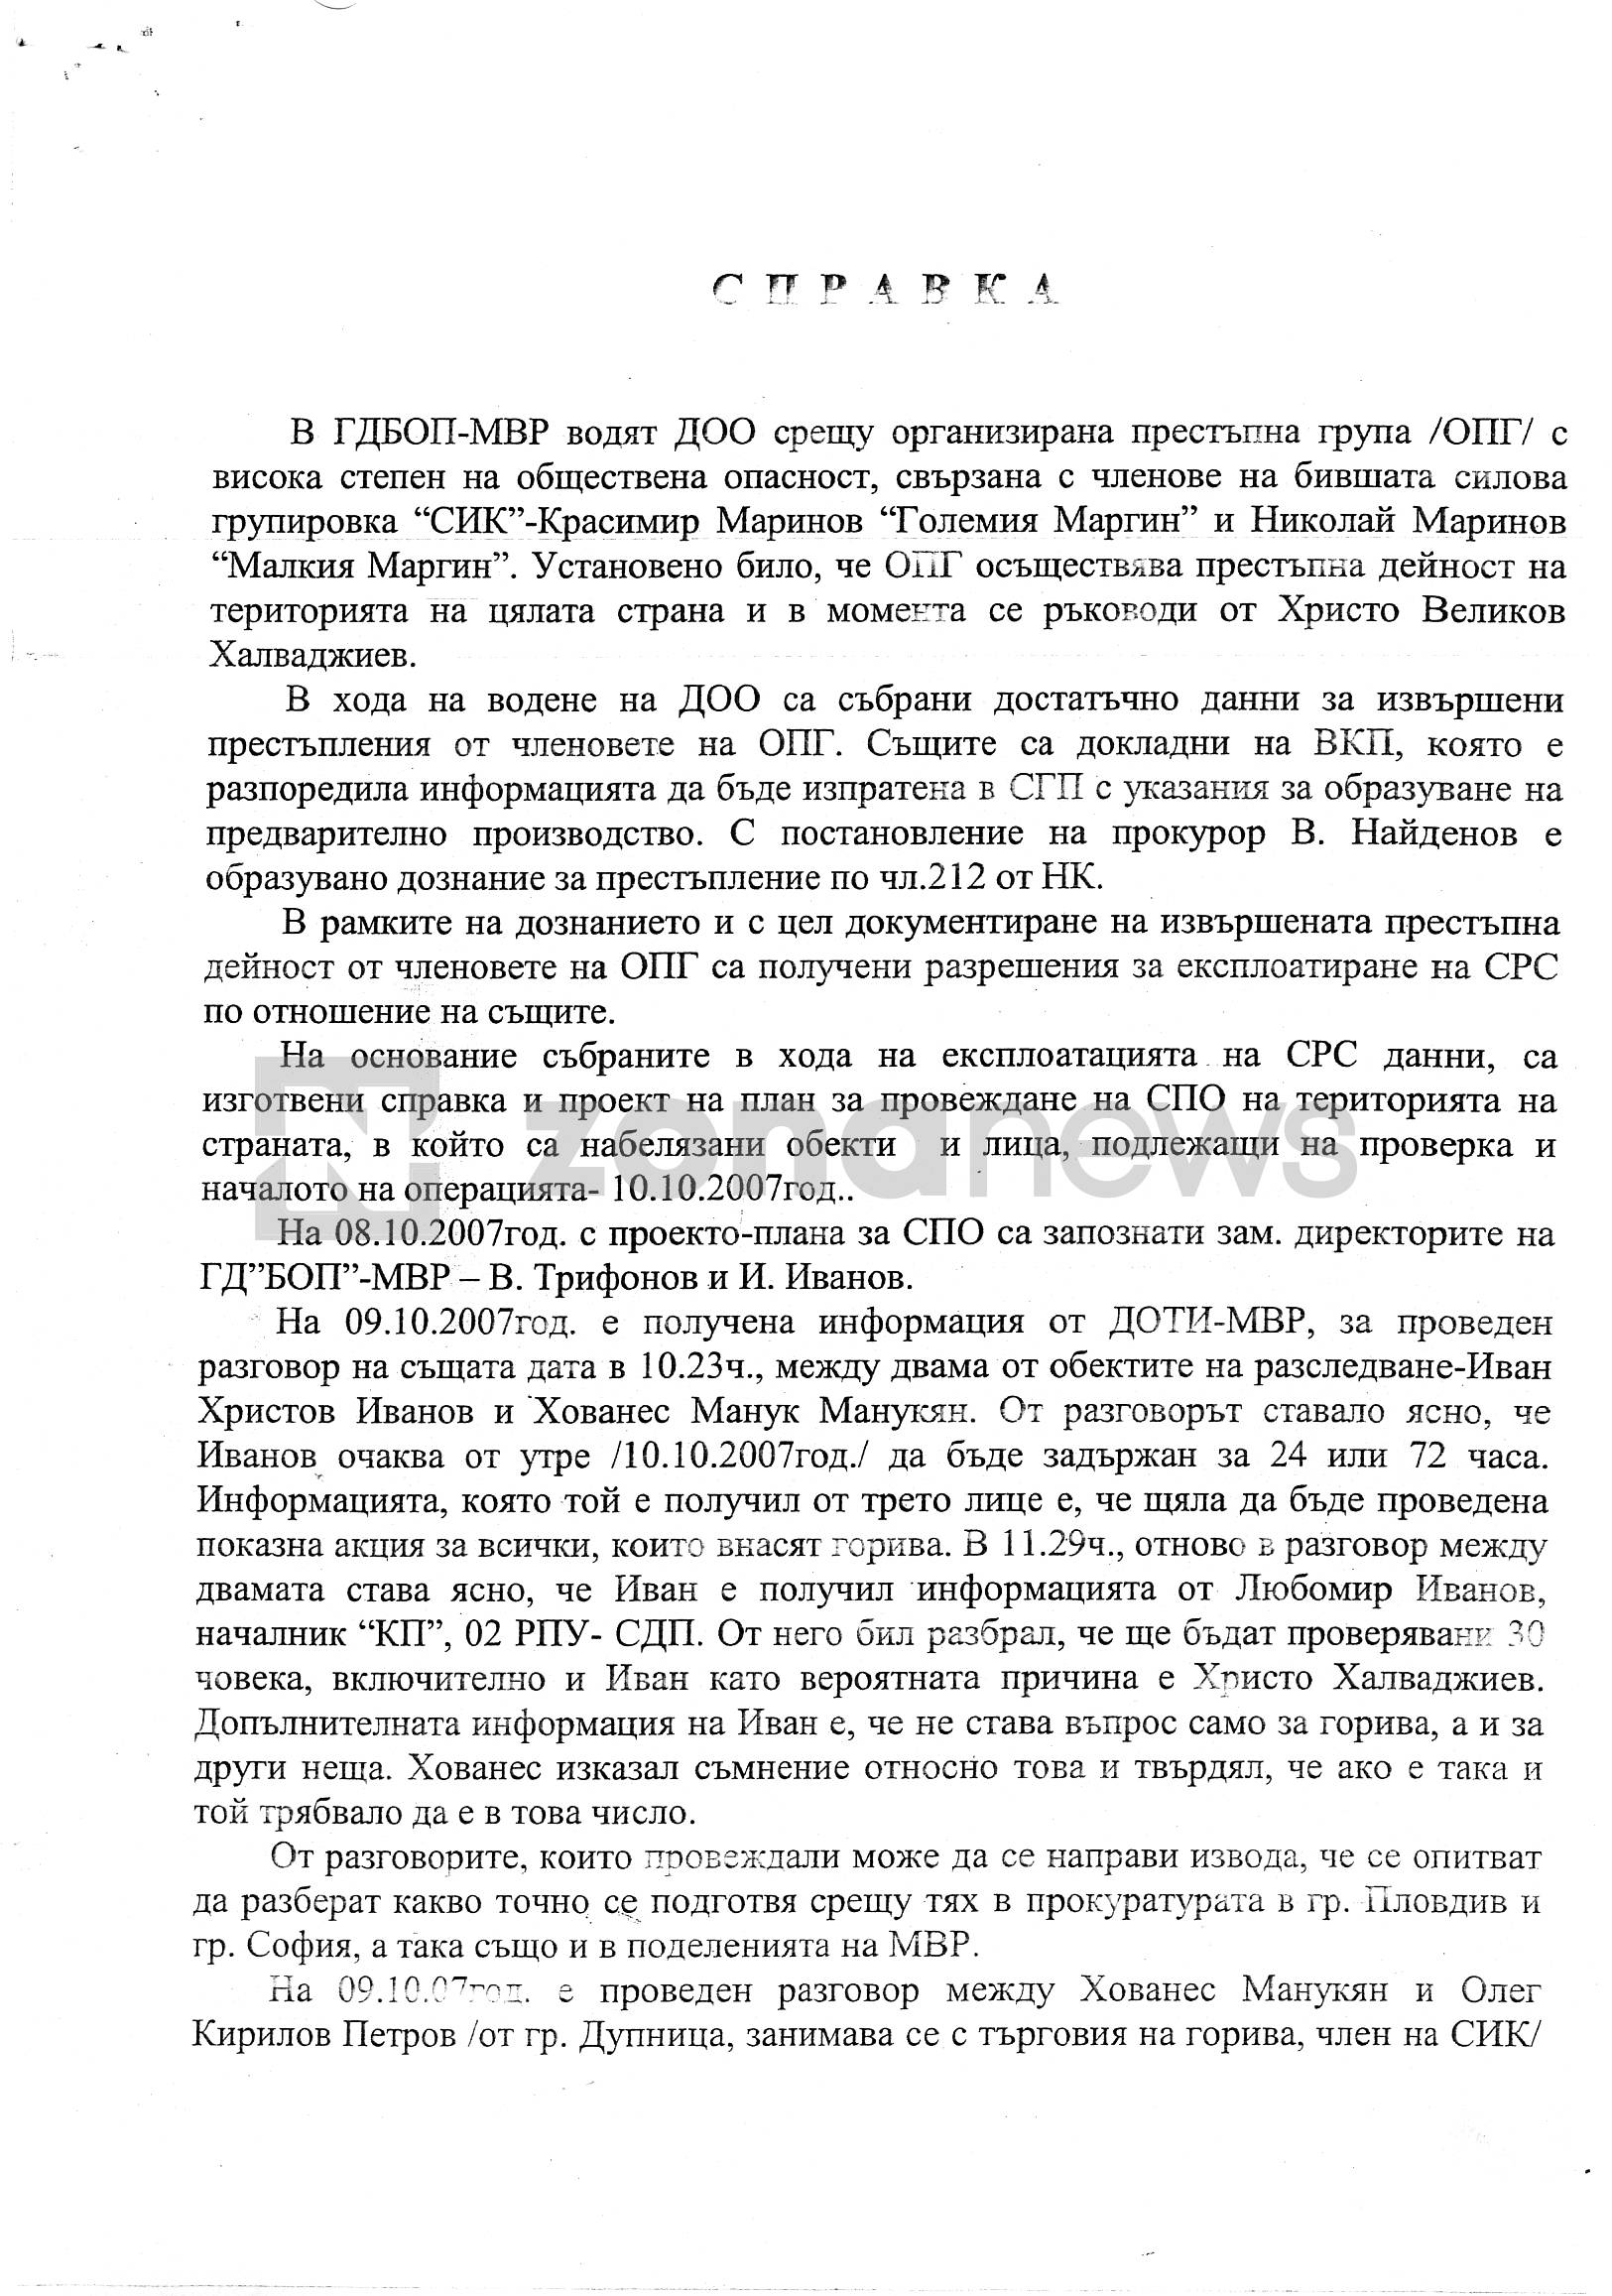 Справката с приложено СРС на някогашния зам.-директор на ГДБОП Иван Иванов, в което протича Маслинката